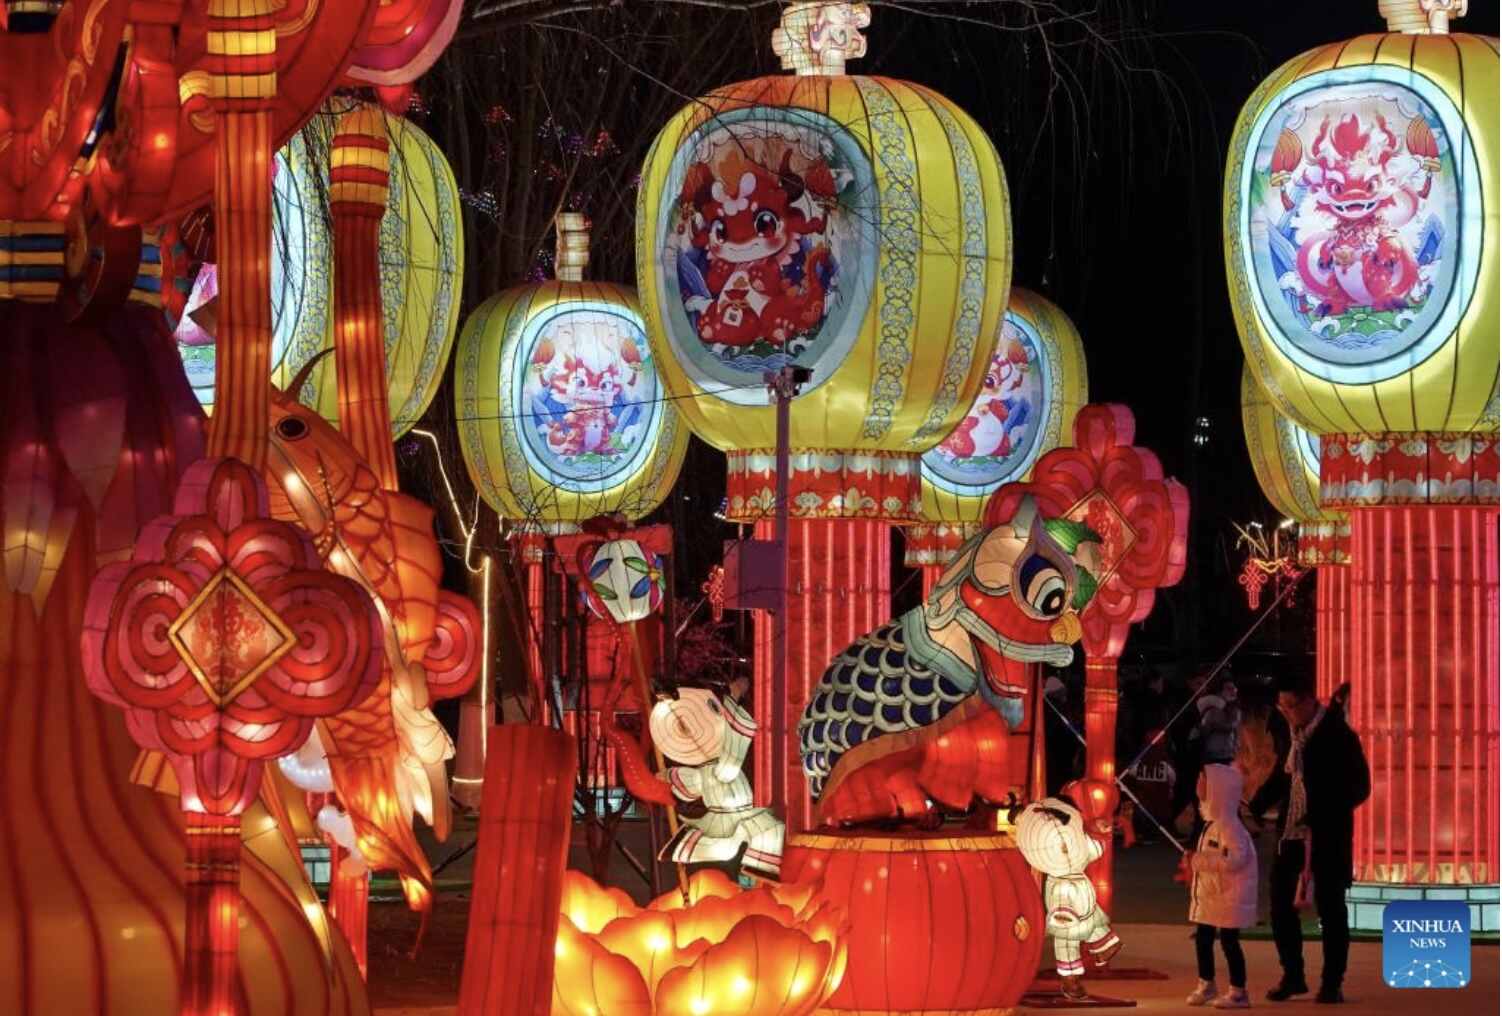 Nhiều thành phố của Trung Quốc được trang trí bằng những chiếc đèn lồng được thắp sáng rực rỡ để đón Tết. Ảnh: Xinhua